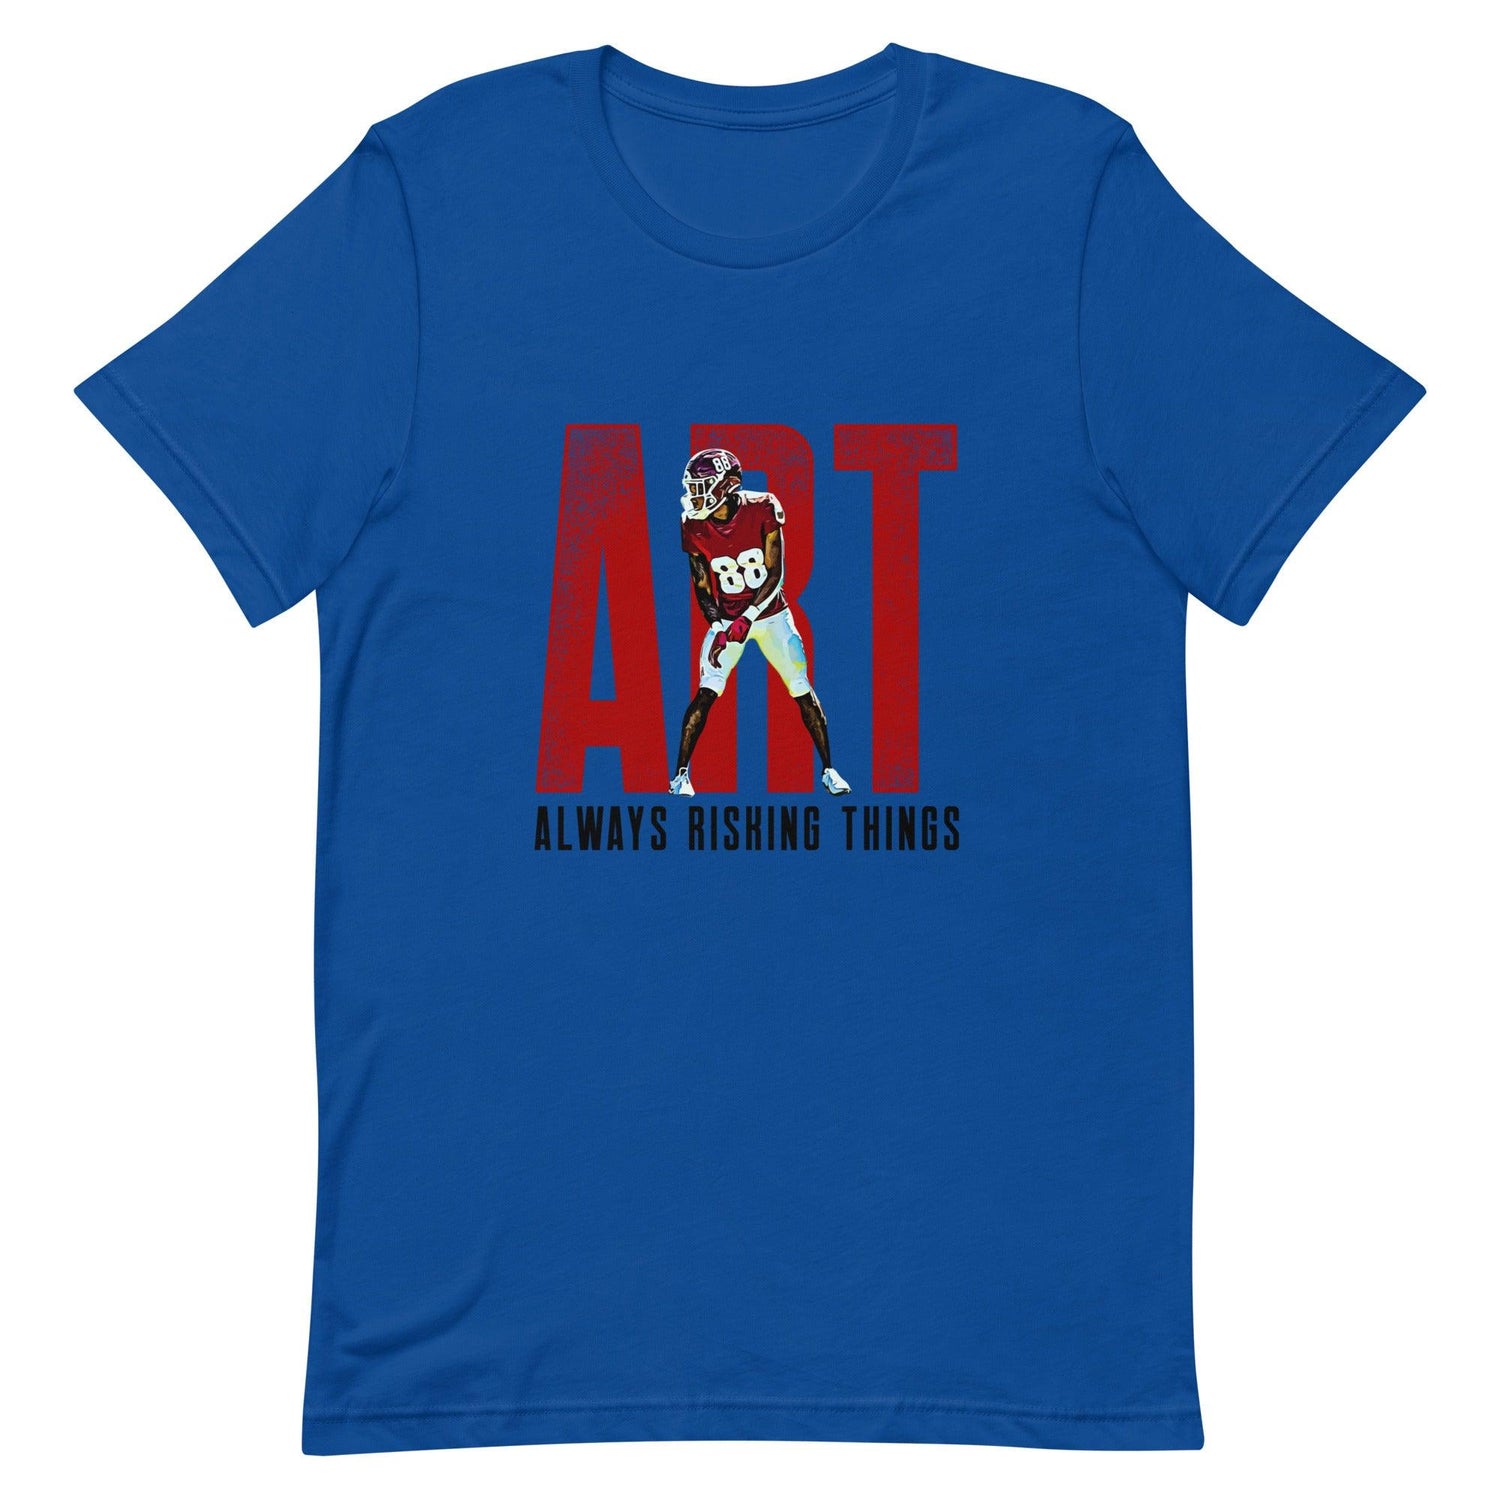 De'Von Fox "ART" t-shirt - Fan Arch